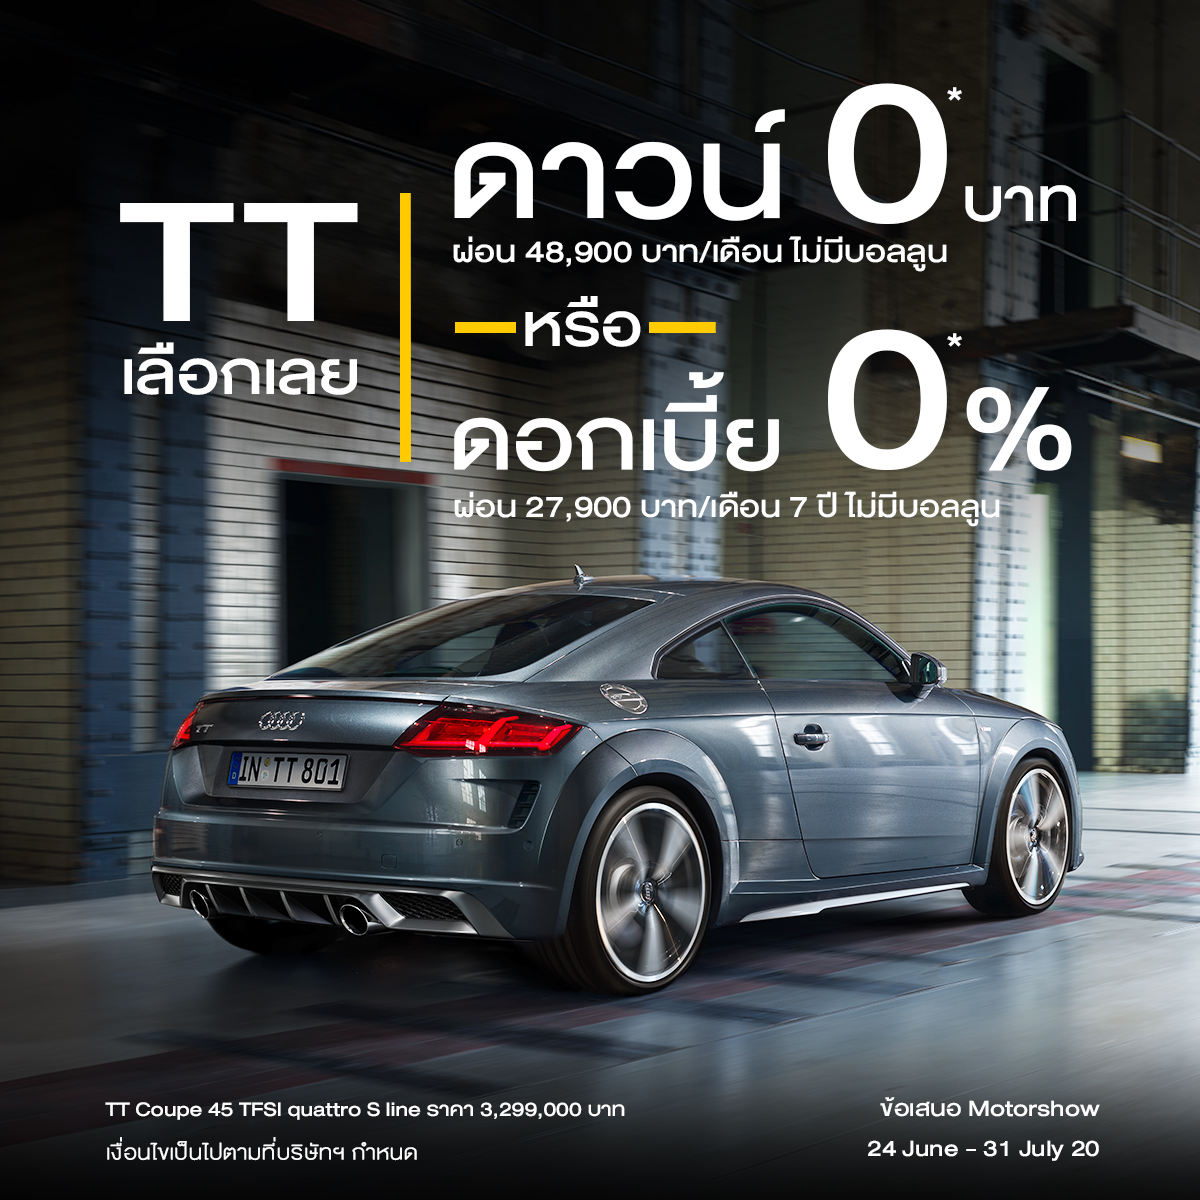 Audi ประเทศไทย ประกาศแคมเปญ “มอเตอร์โชว์ 2020”  ดาวน์ 0 บาท เริ่มแล้ววันนี้!